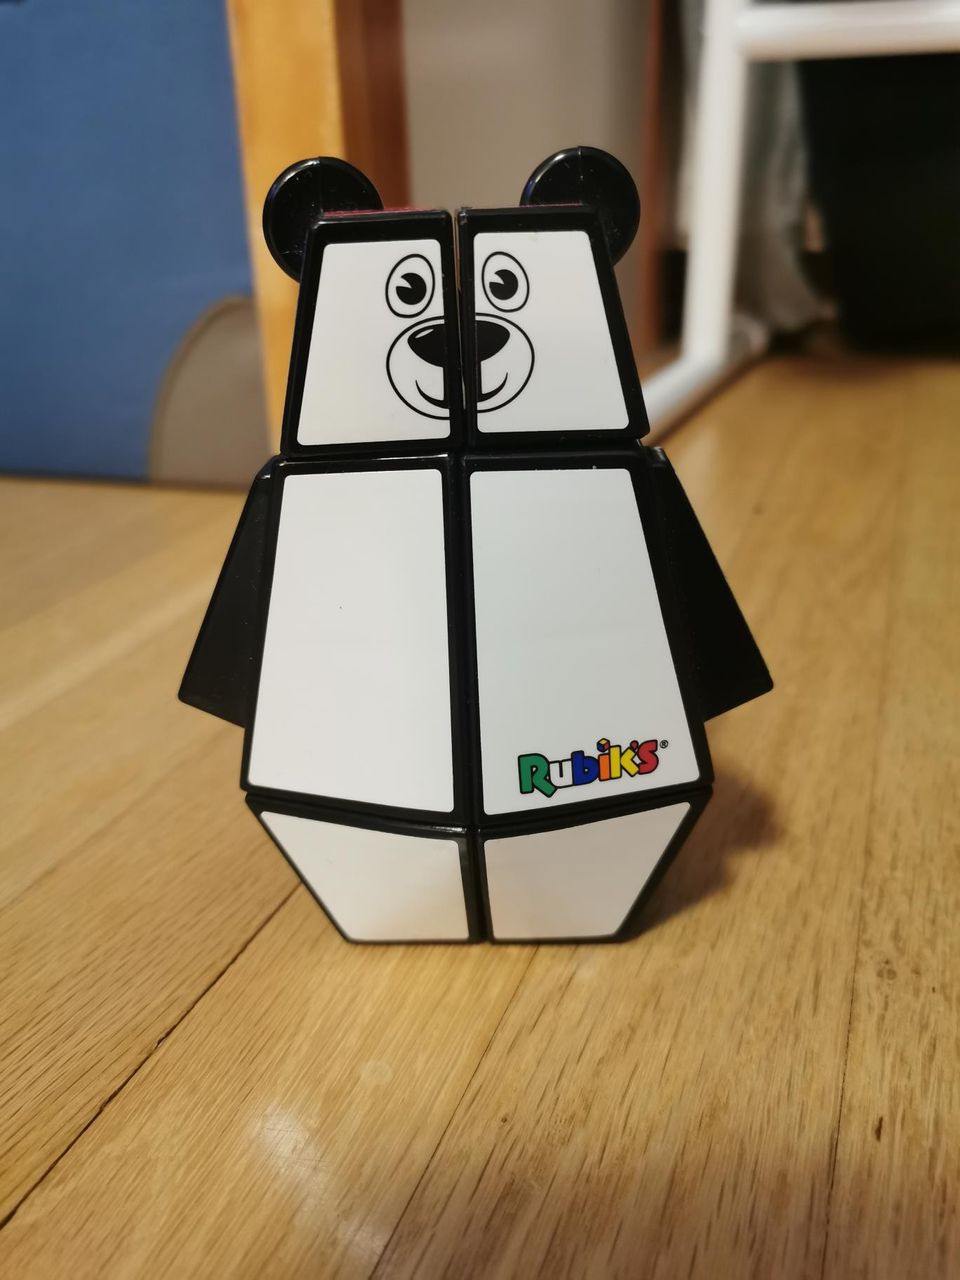 Karhu Rubiks kuutio 4+